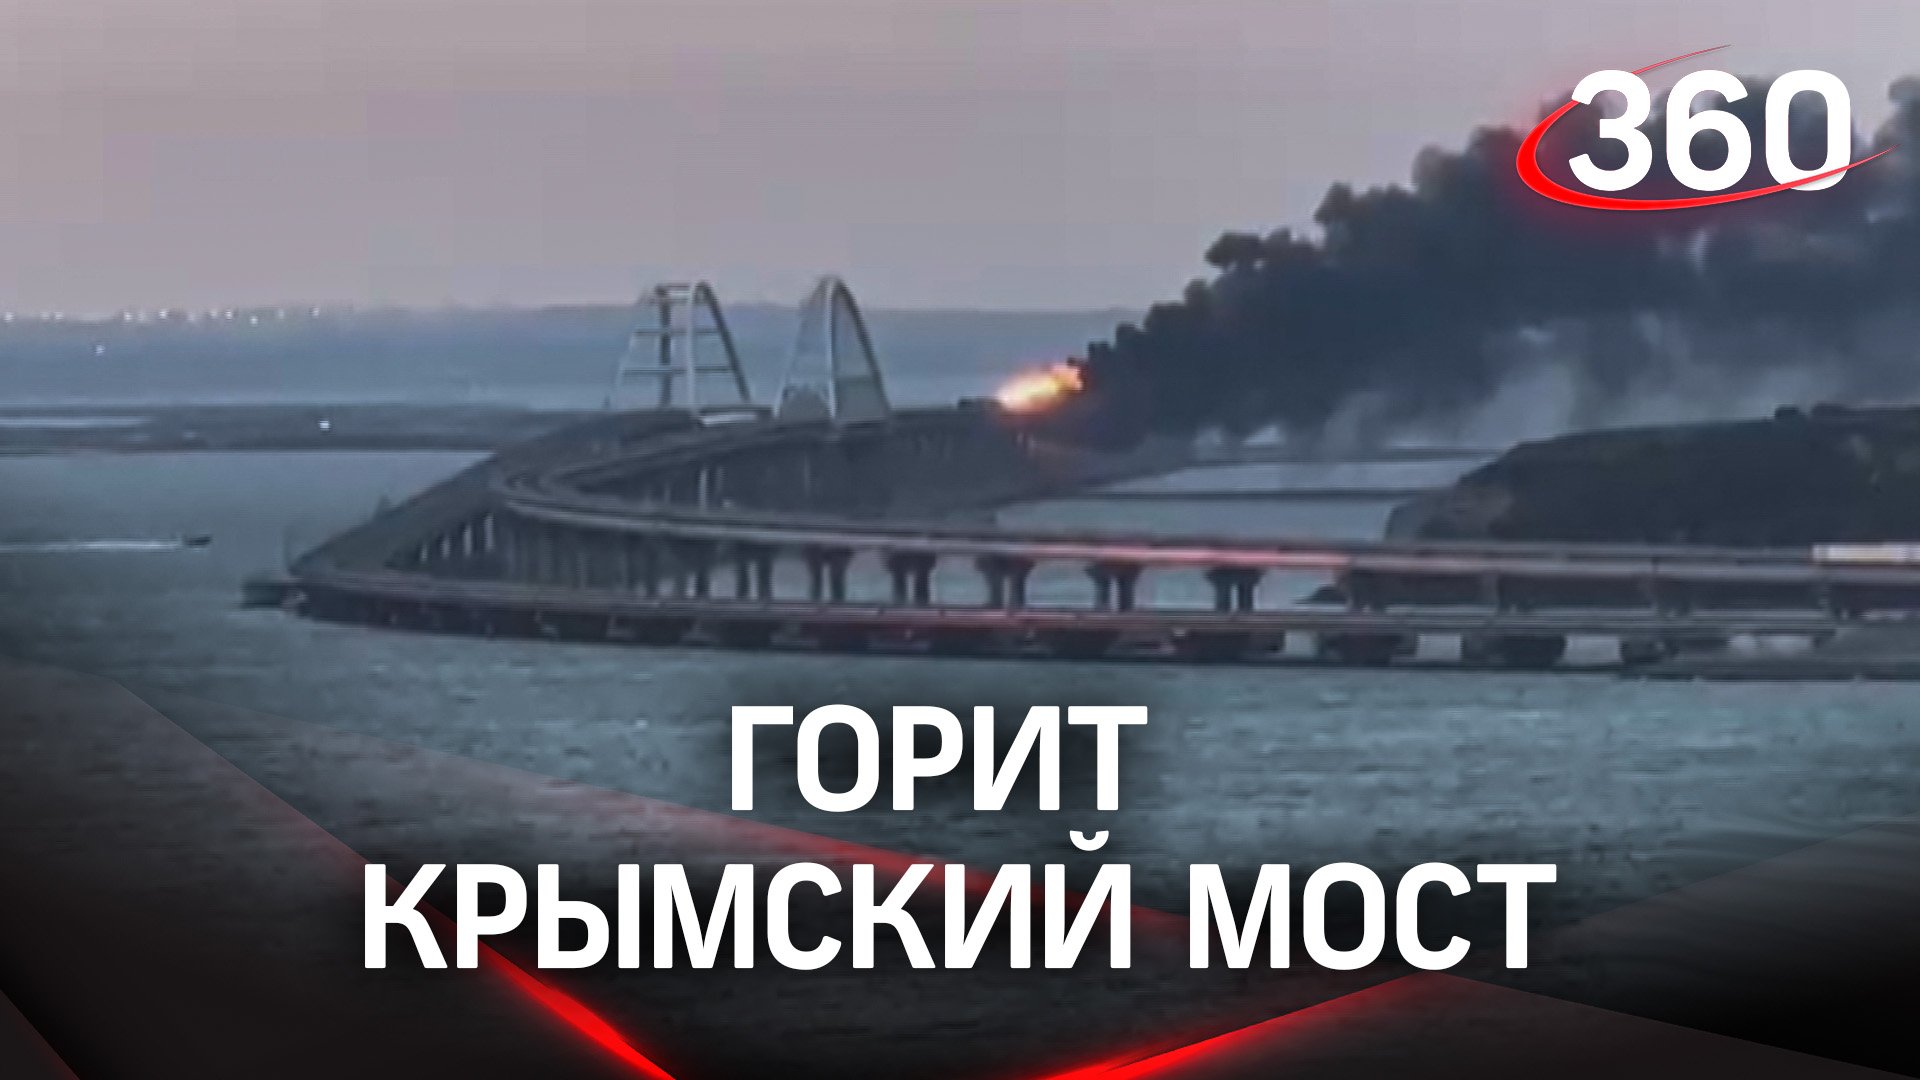 Подрыв грузовика на Крымском мосту - загорелись цистерны с топливом, пострадавших нет. Видео